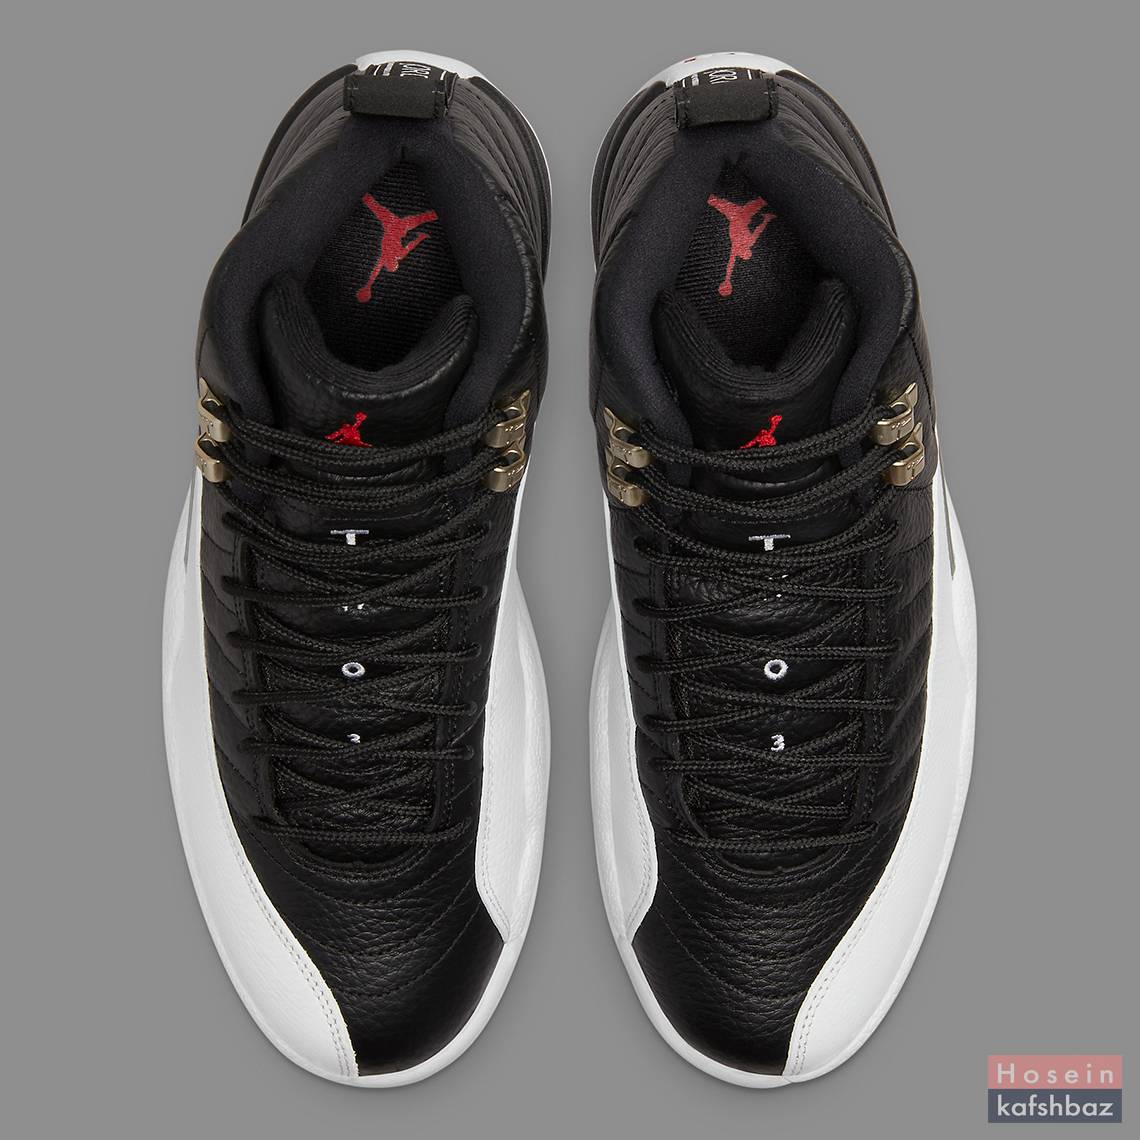  Nike Air Jordan 12 Playoffs